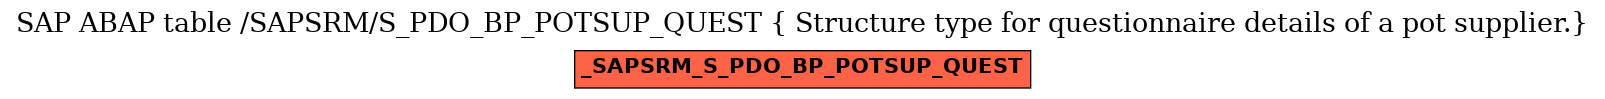 E-R Diagram for table /SAPSRM/S_PDO_BP_POTSUP_QUEST ( Structure type for questionnaire details of a pot supplier.)